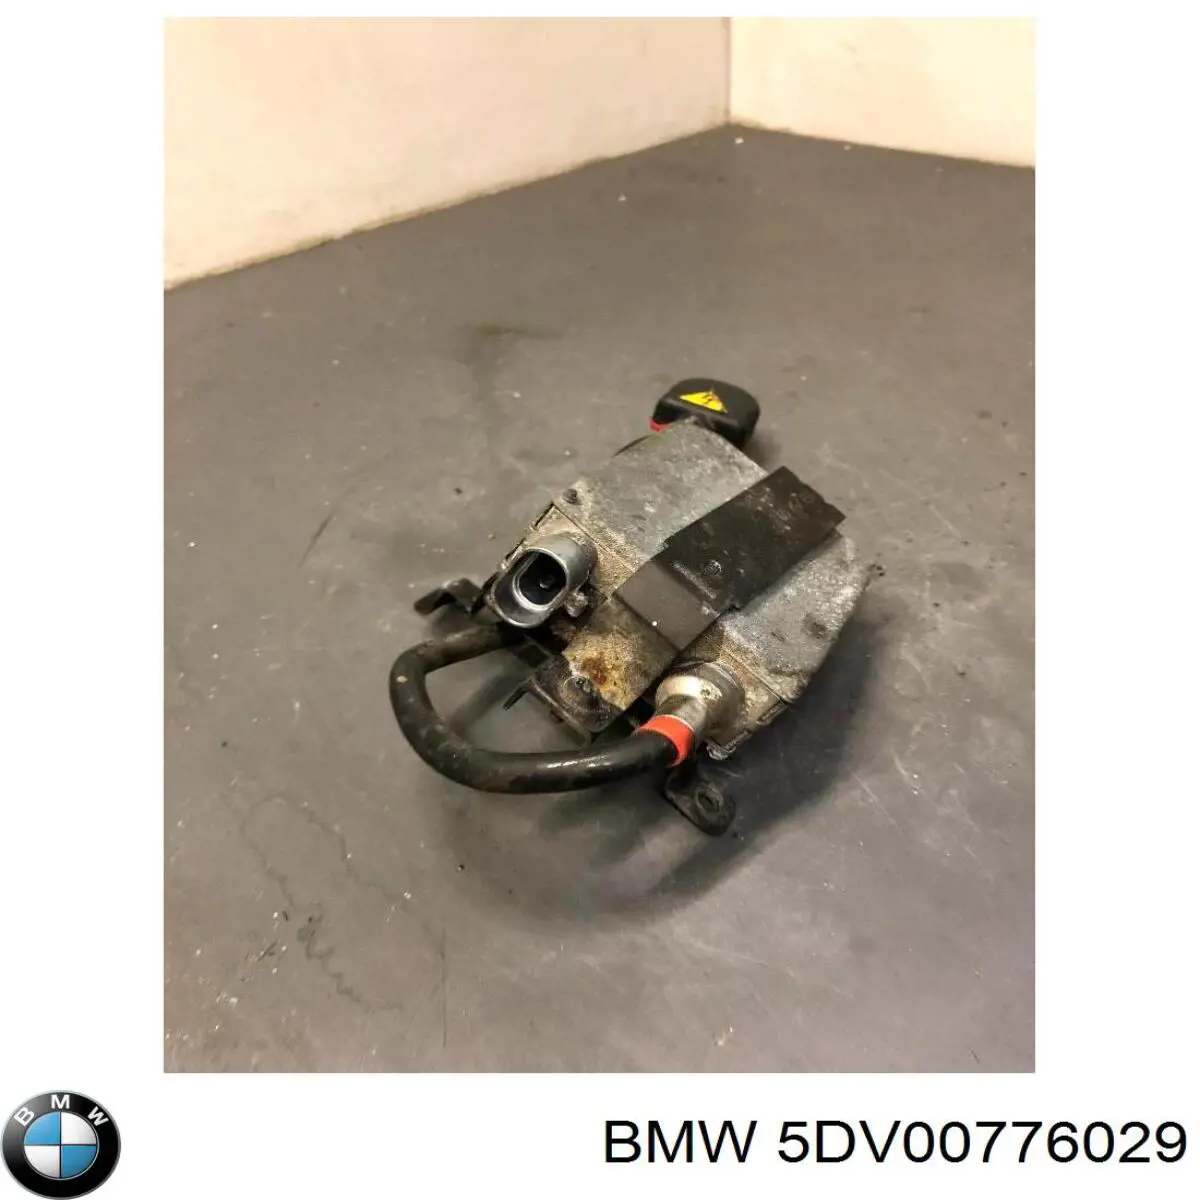 5DV00776029 BMW bobina de reactancia, lámpara de descarga de gas